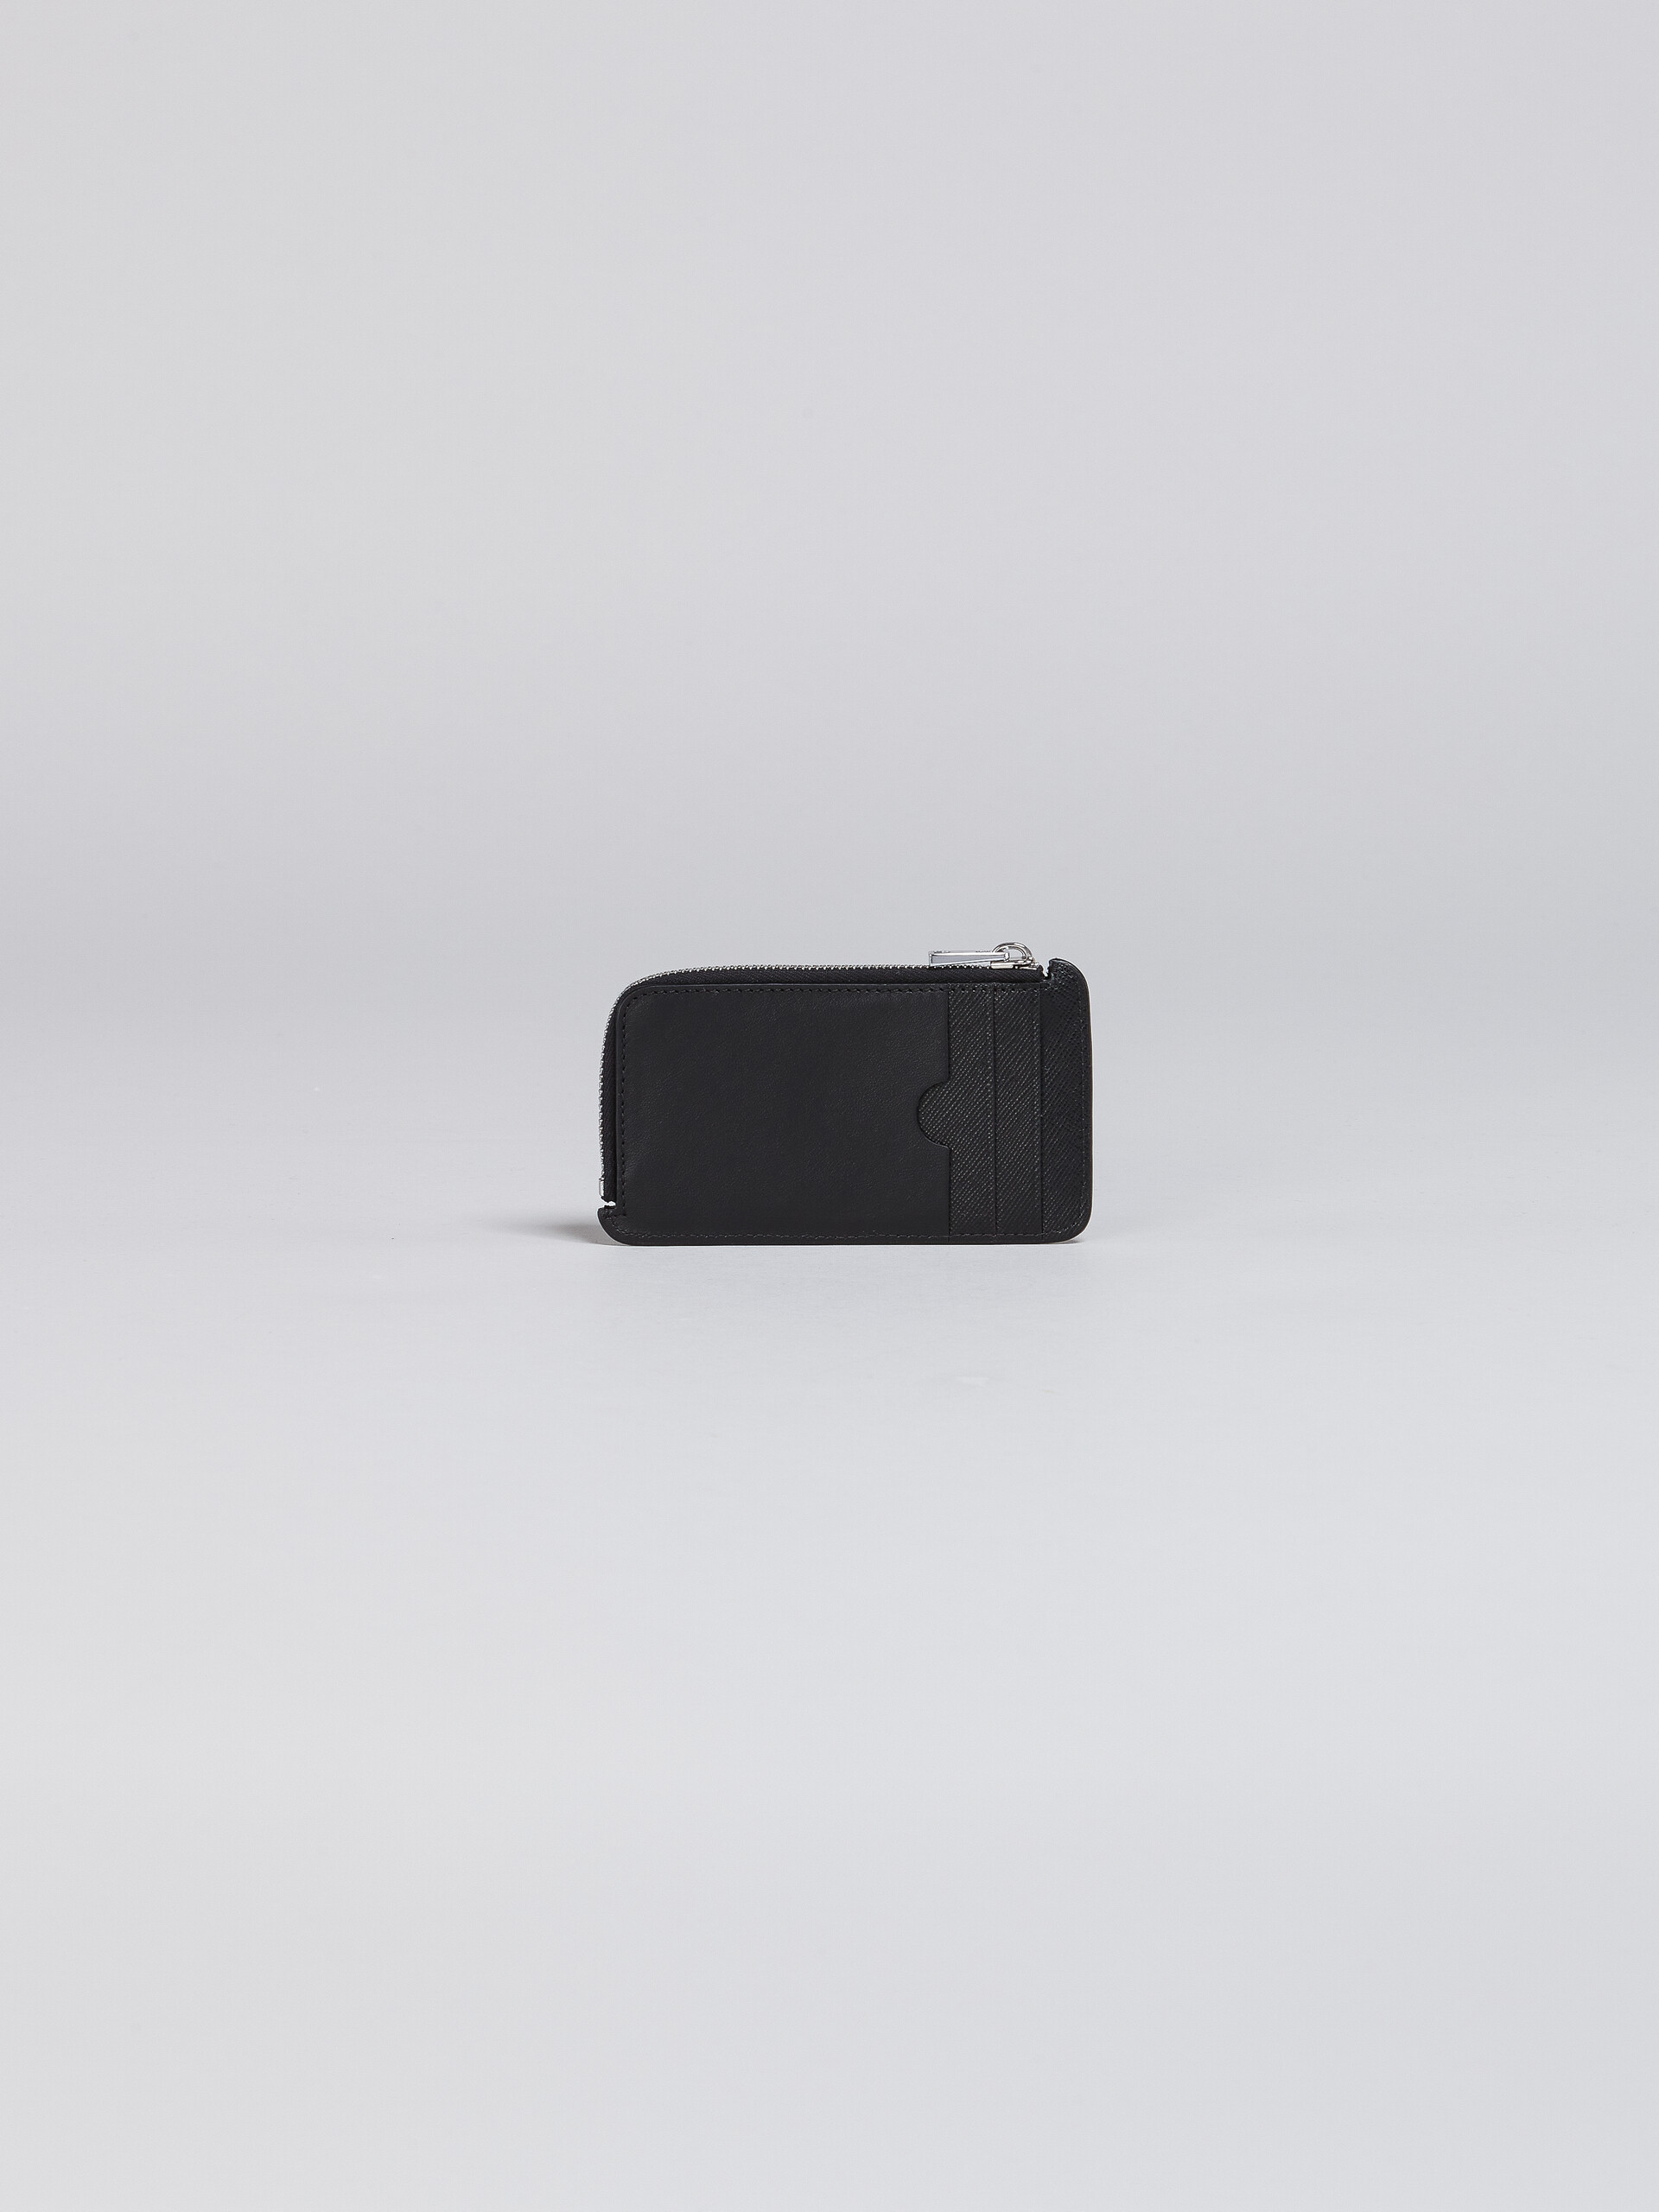 サフィアーノレザー ジップ式カードケース - 財布 - Image 3